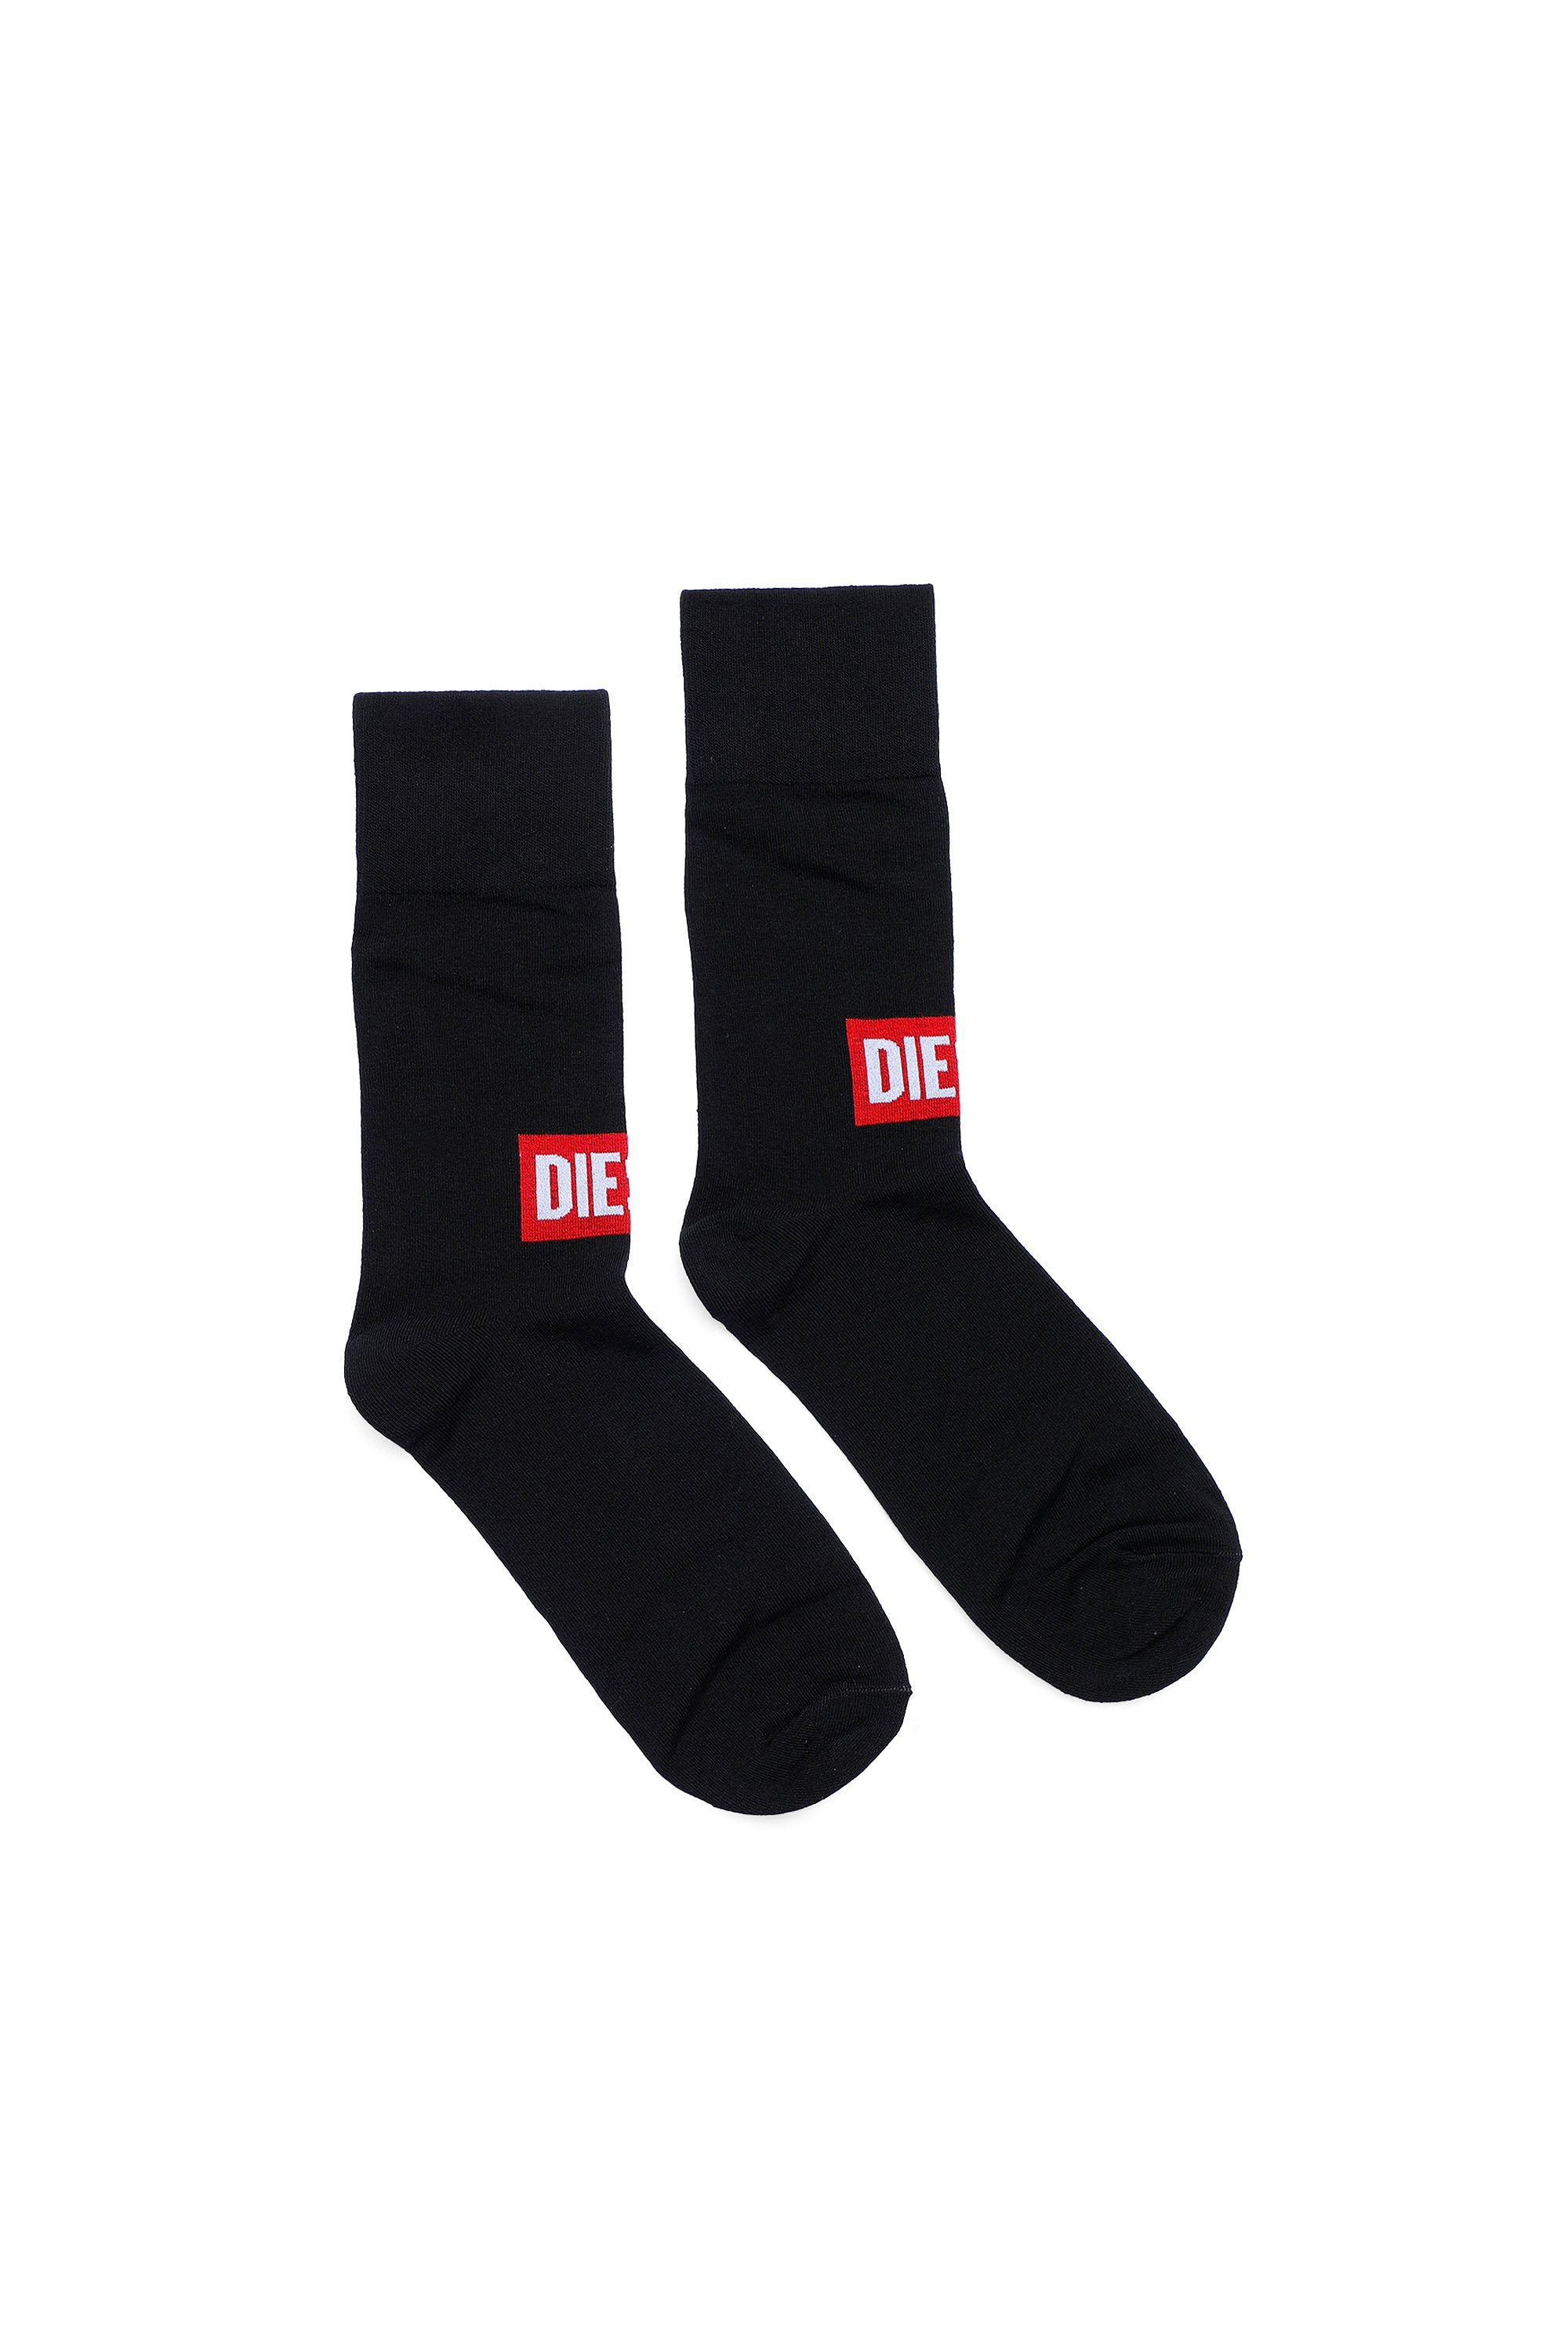 Diesel - Socken mit Diesel-Logo vorn - Strümpfe - Herren - Schwarz